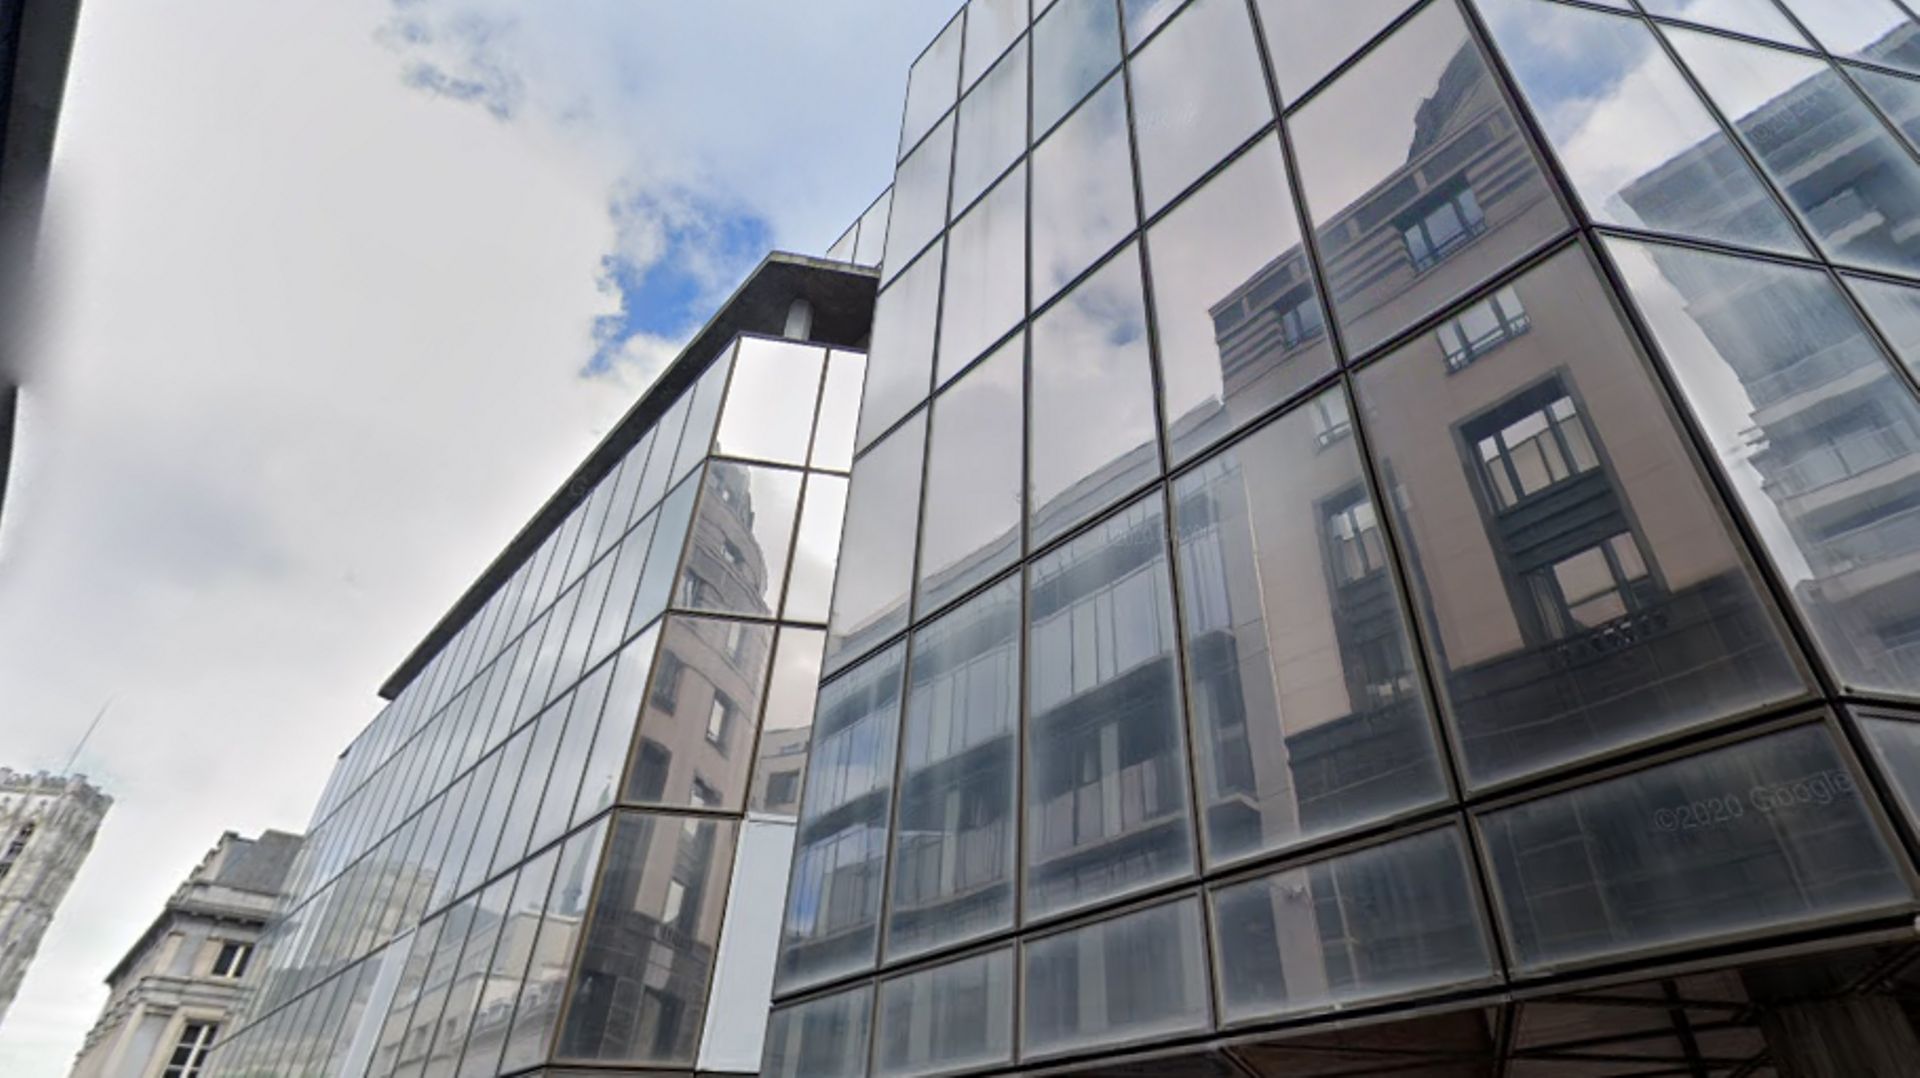 L’immeuble de la rue De Ligne, qui abritera le futur commissariat central Bruxelles/Ixelles, a été occupé jusqu’en 2015 par Dexia. En attendant que les travaux débutent, en 2023, le complexe accueille temporairement l’ASBL culturelle "Arty-Farty".